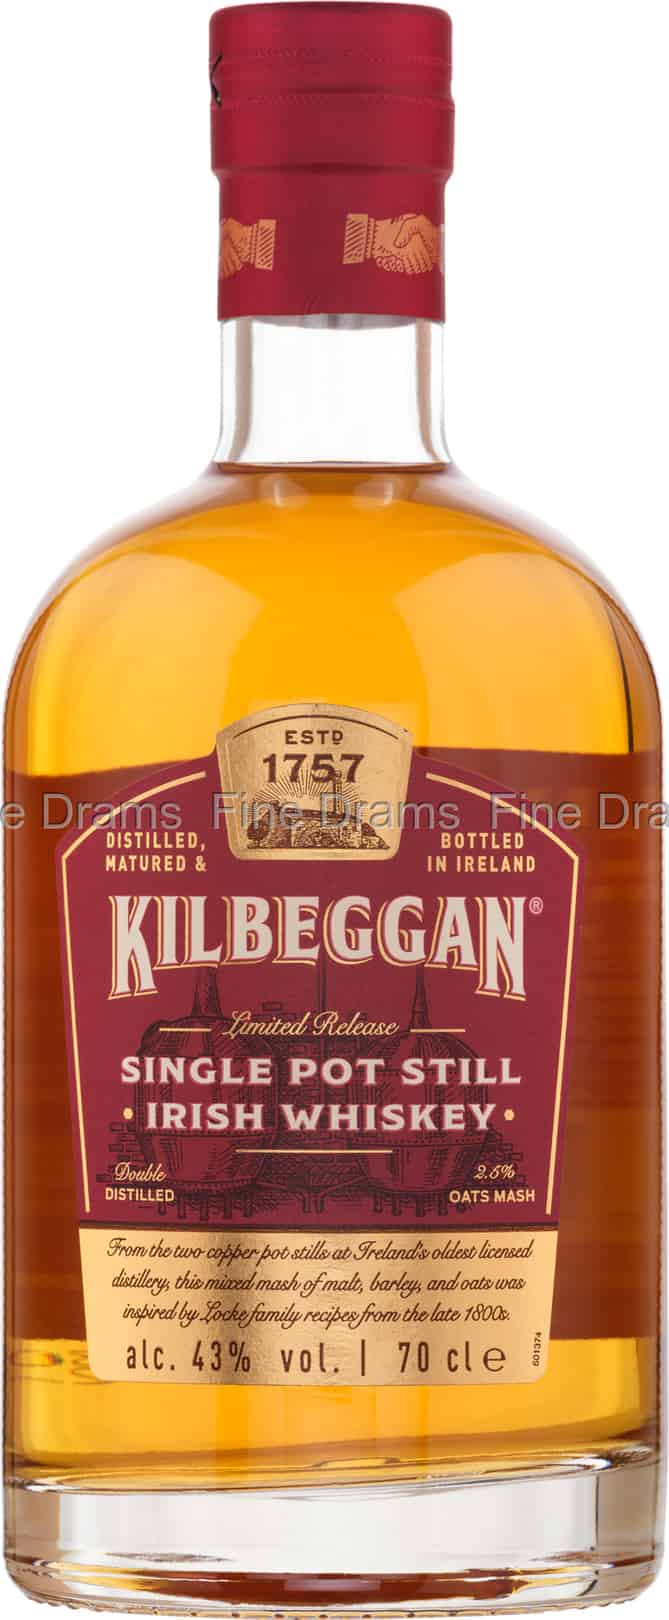 Whiskey Kilbeggan Pot Still Single